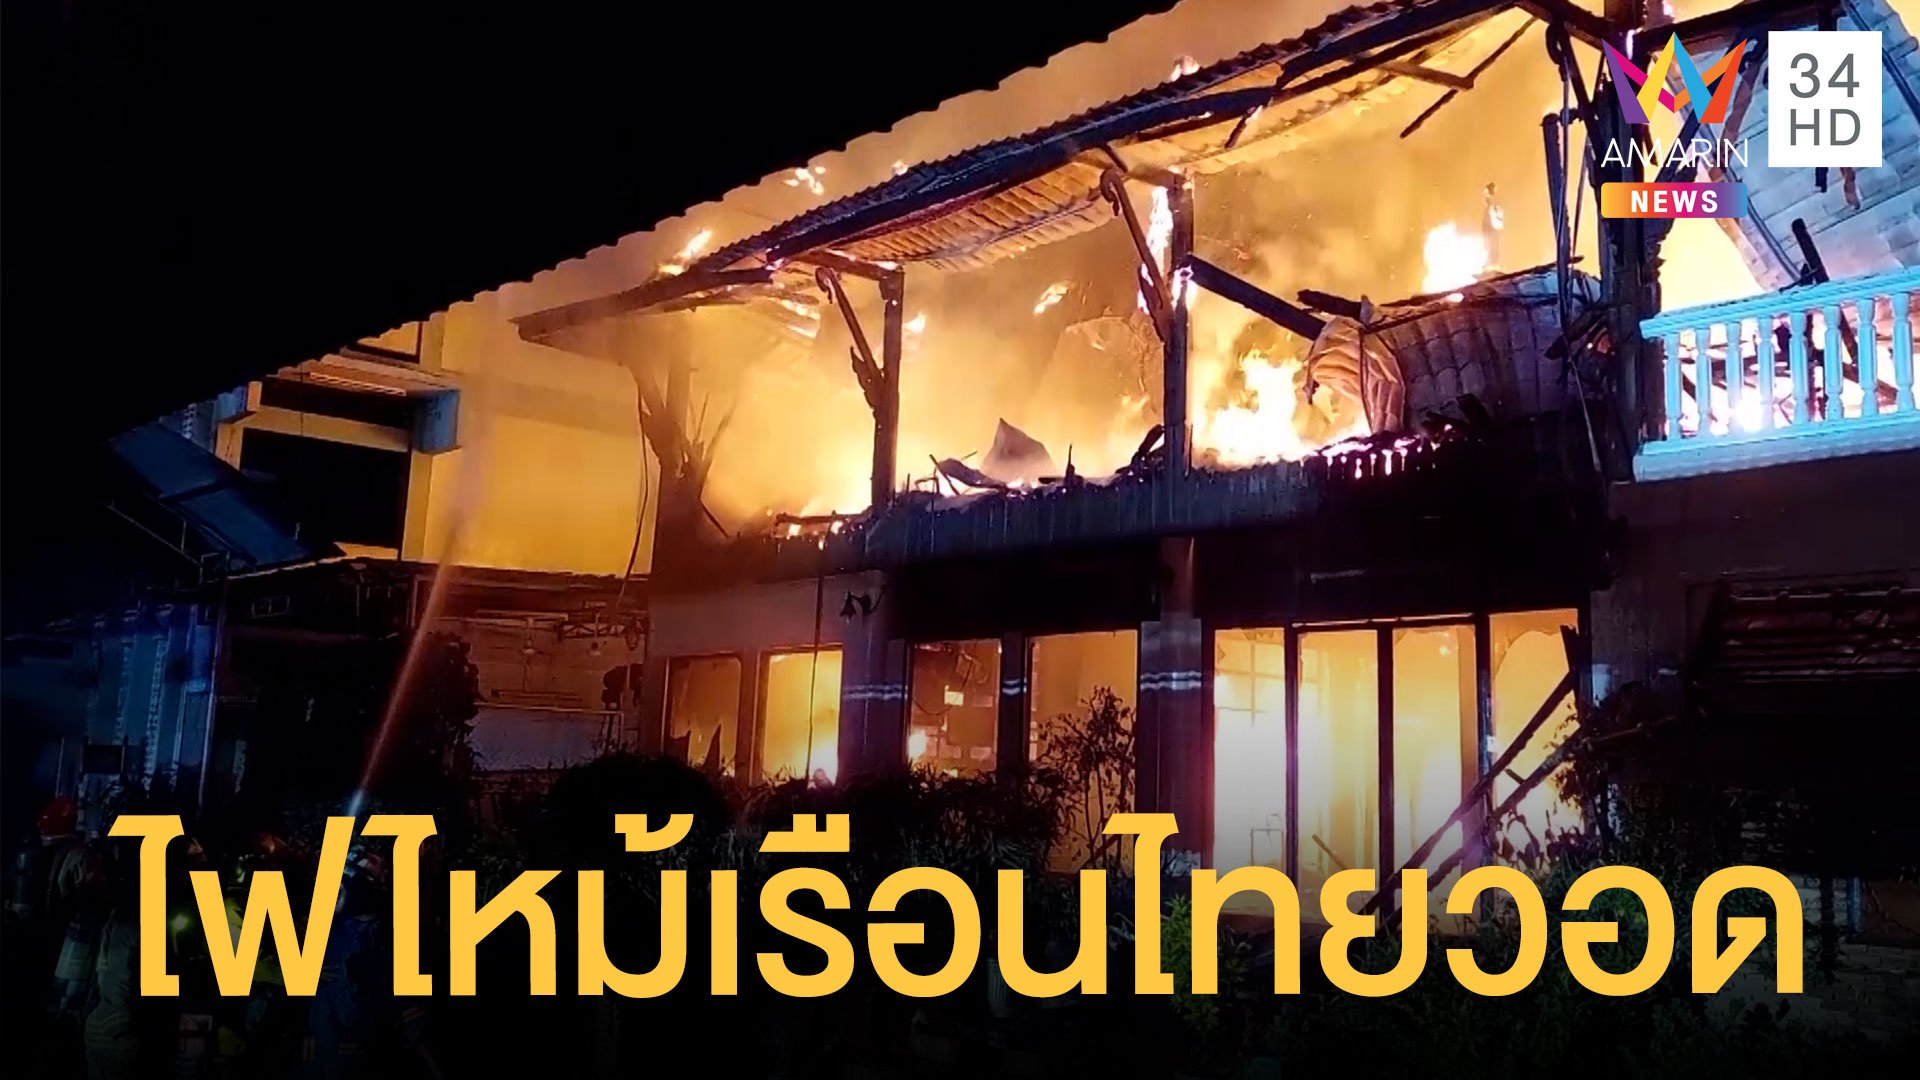 ไฟไหม้บ้านเรือนไทยโบราณเครื่องดนตรีวอด สูญนับล้านบาท | ข่าวเที่ยงอมรินทร์ | 23 ก.พ. 65 | AMARIN TVHD34